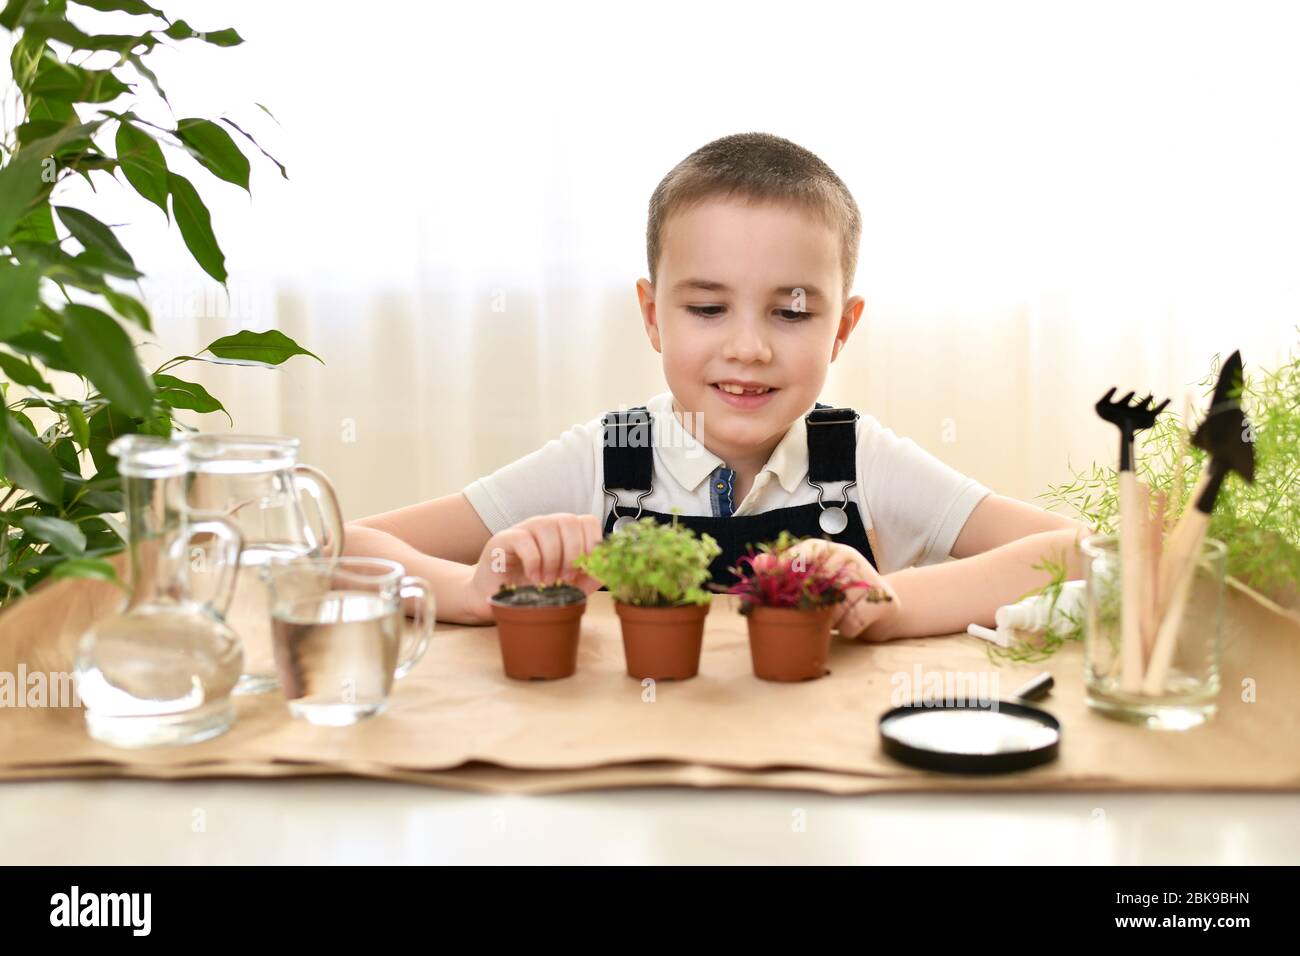 Das Kind wächst und pflegt Mikrogrüns. Der Junge sieht mit Freude und einem Lächeln auf die aufsteigenden Sprossen. Stockfoto